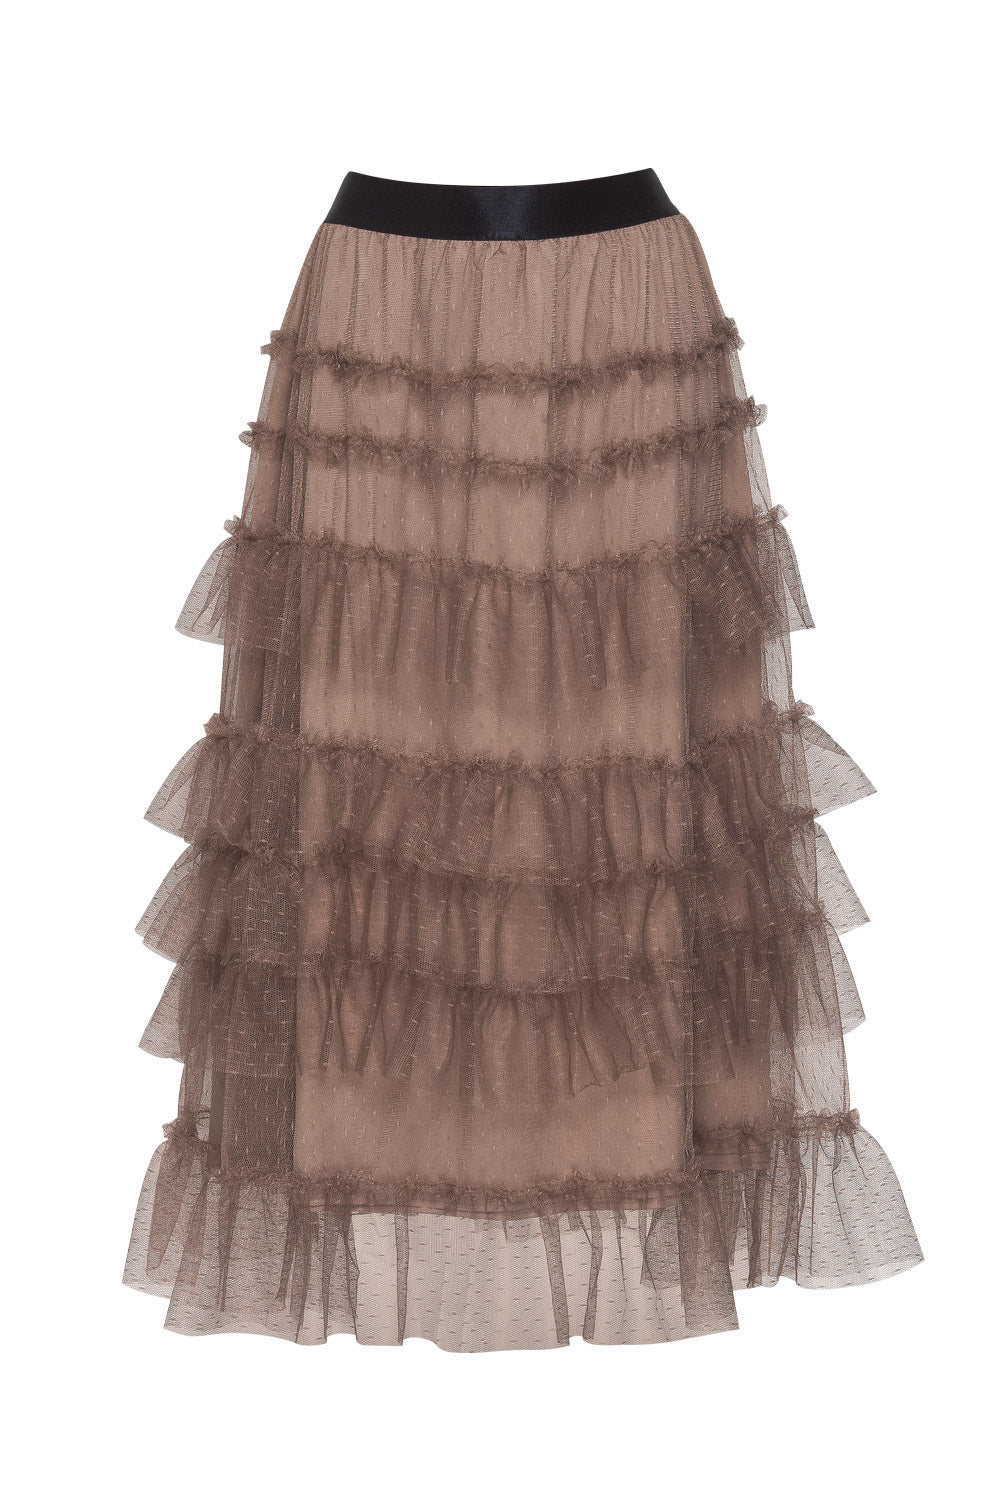 Kahlo Skirt